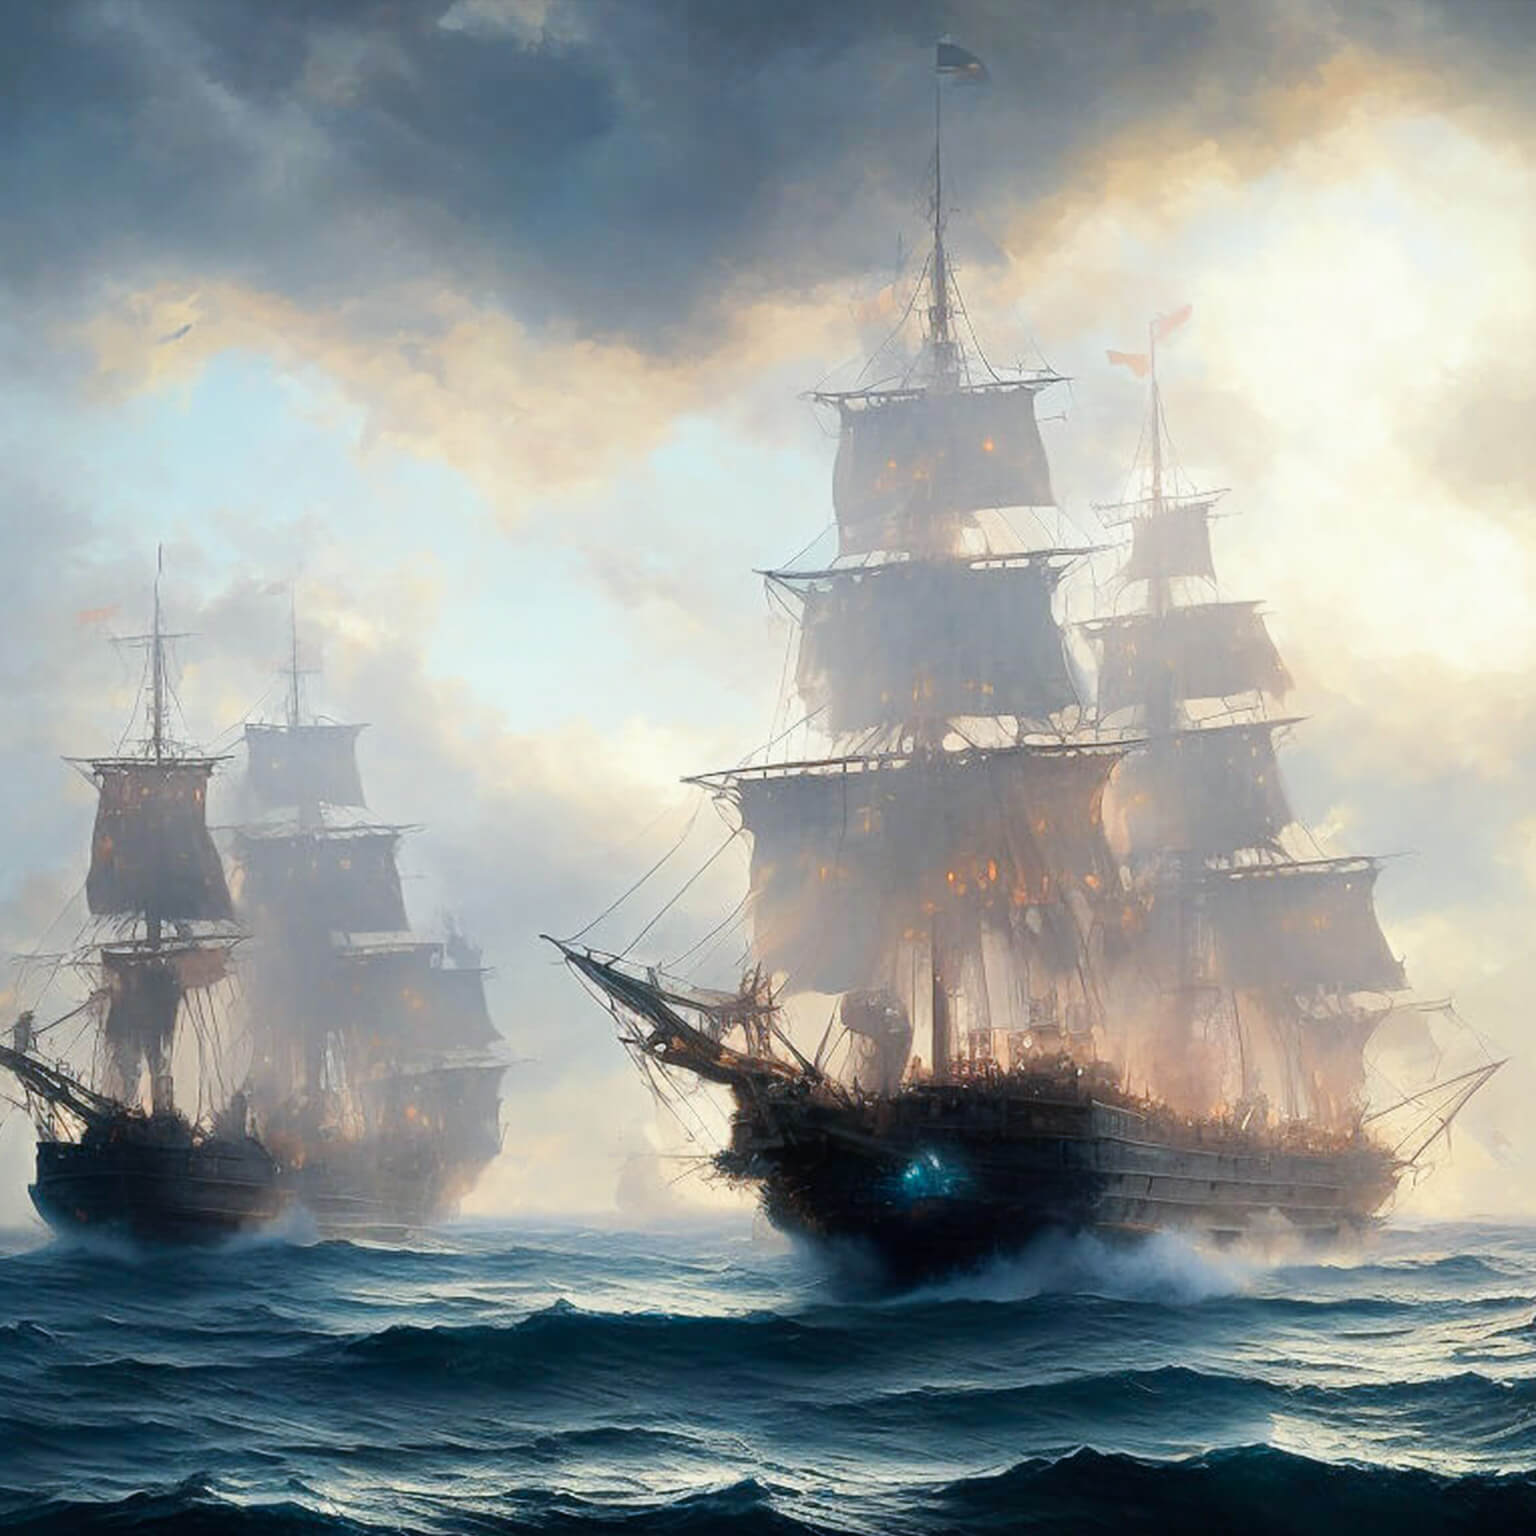 Ein KI Bild von einer Flotte von alten Segelschiffen im Nebel